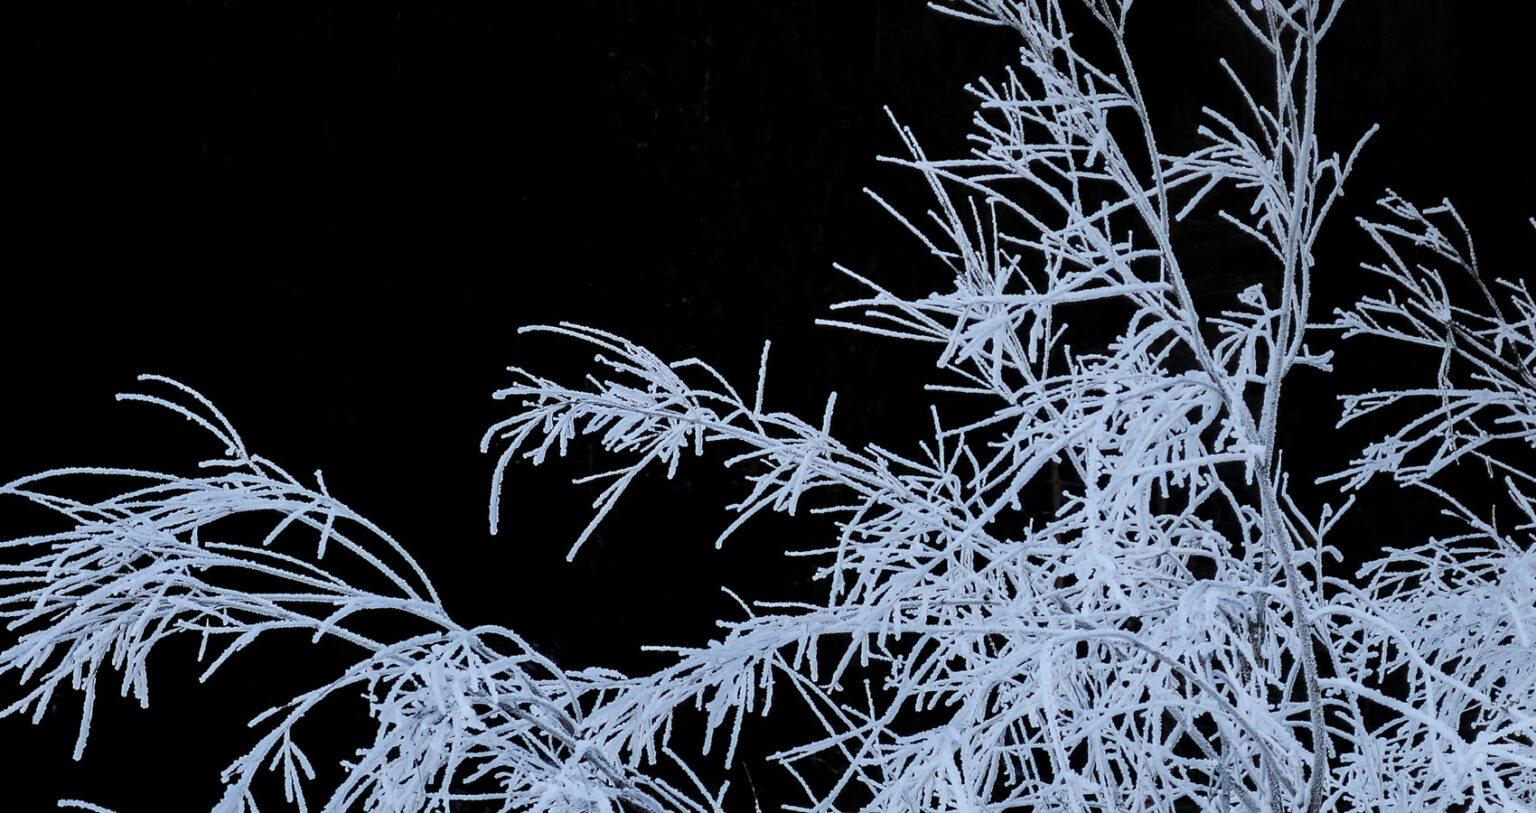 frost at midnight poem